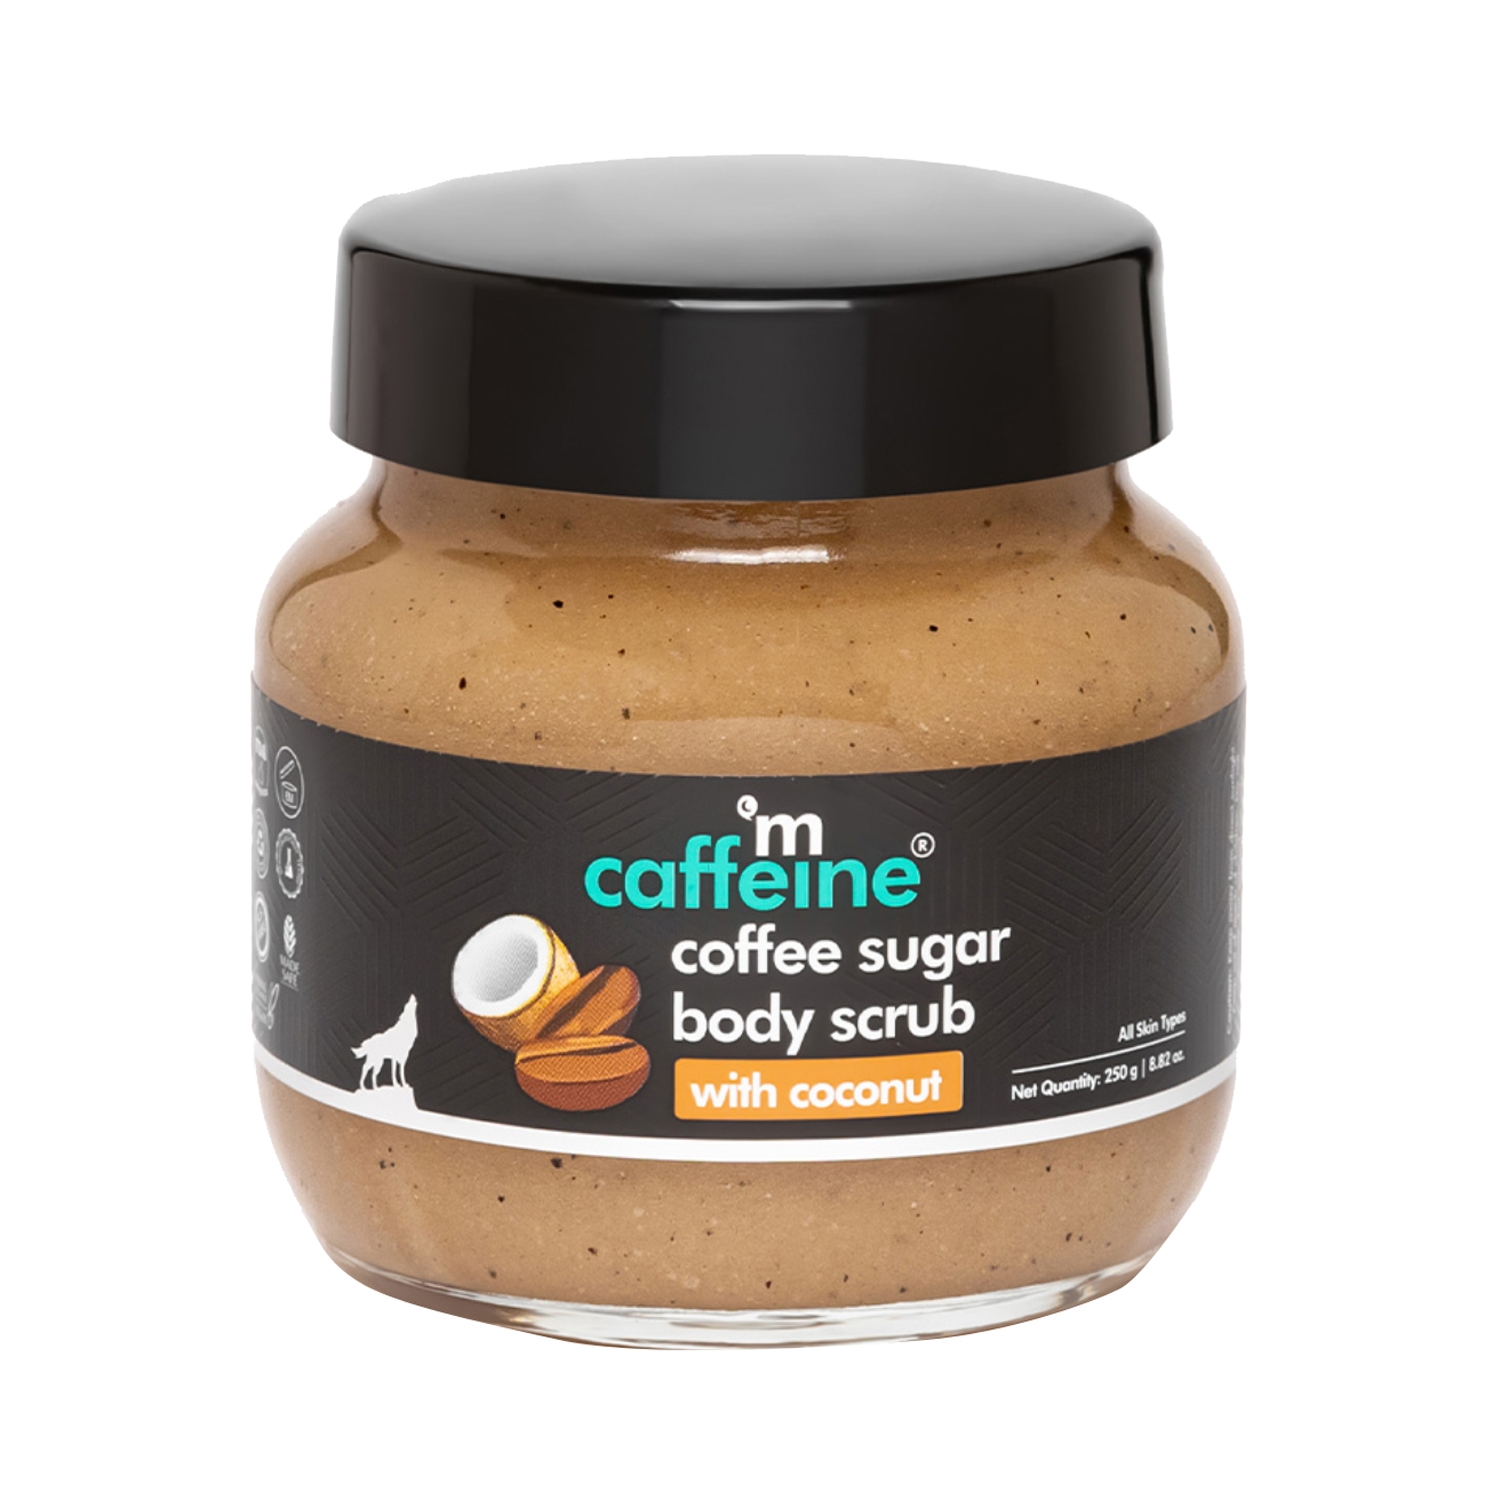 mCaffeine | mCaffeine Coffee Sugar Body Scrub With Coconut (250g)